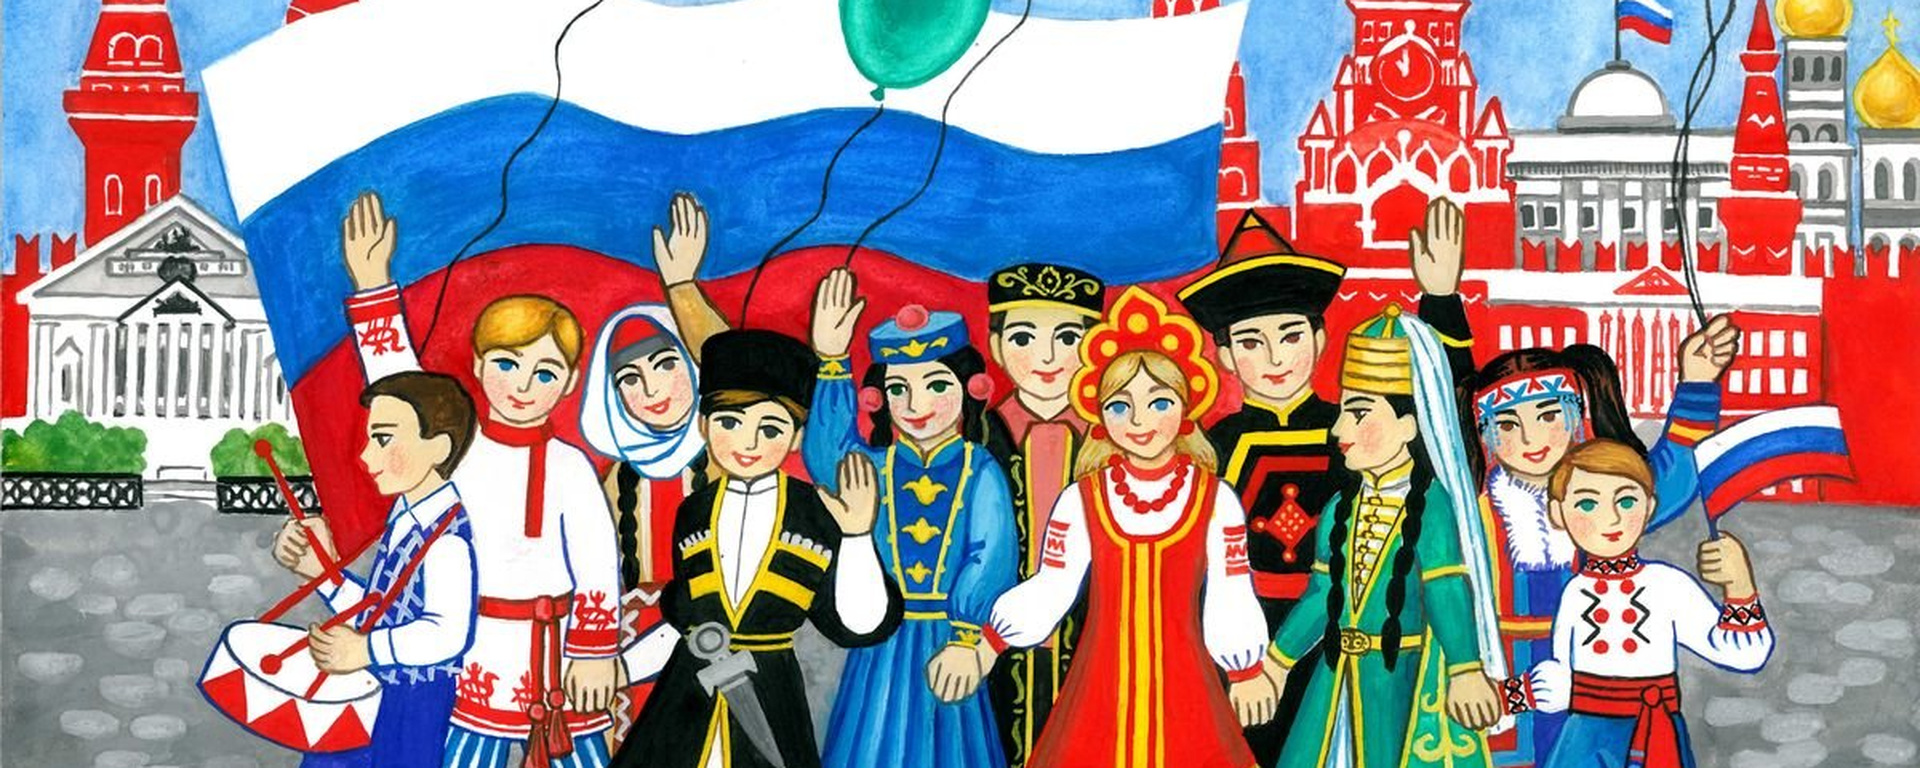 День единства россии картинки рисунки